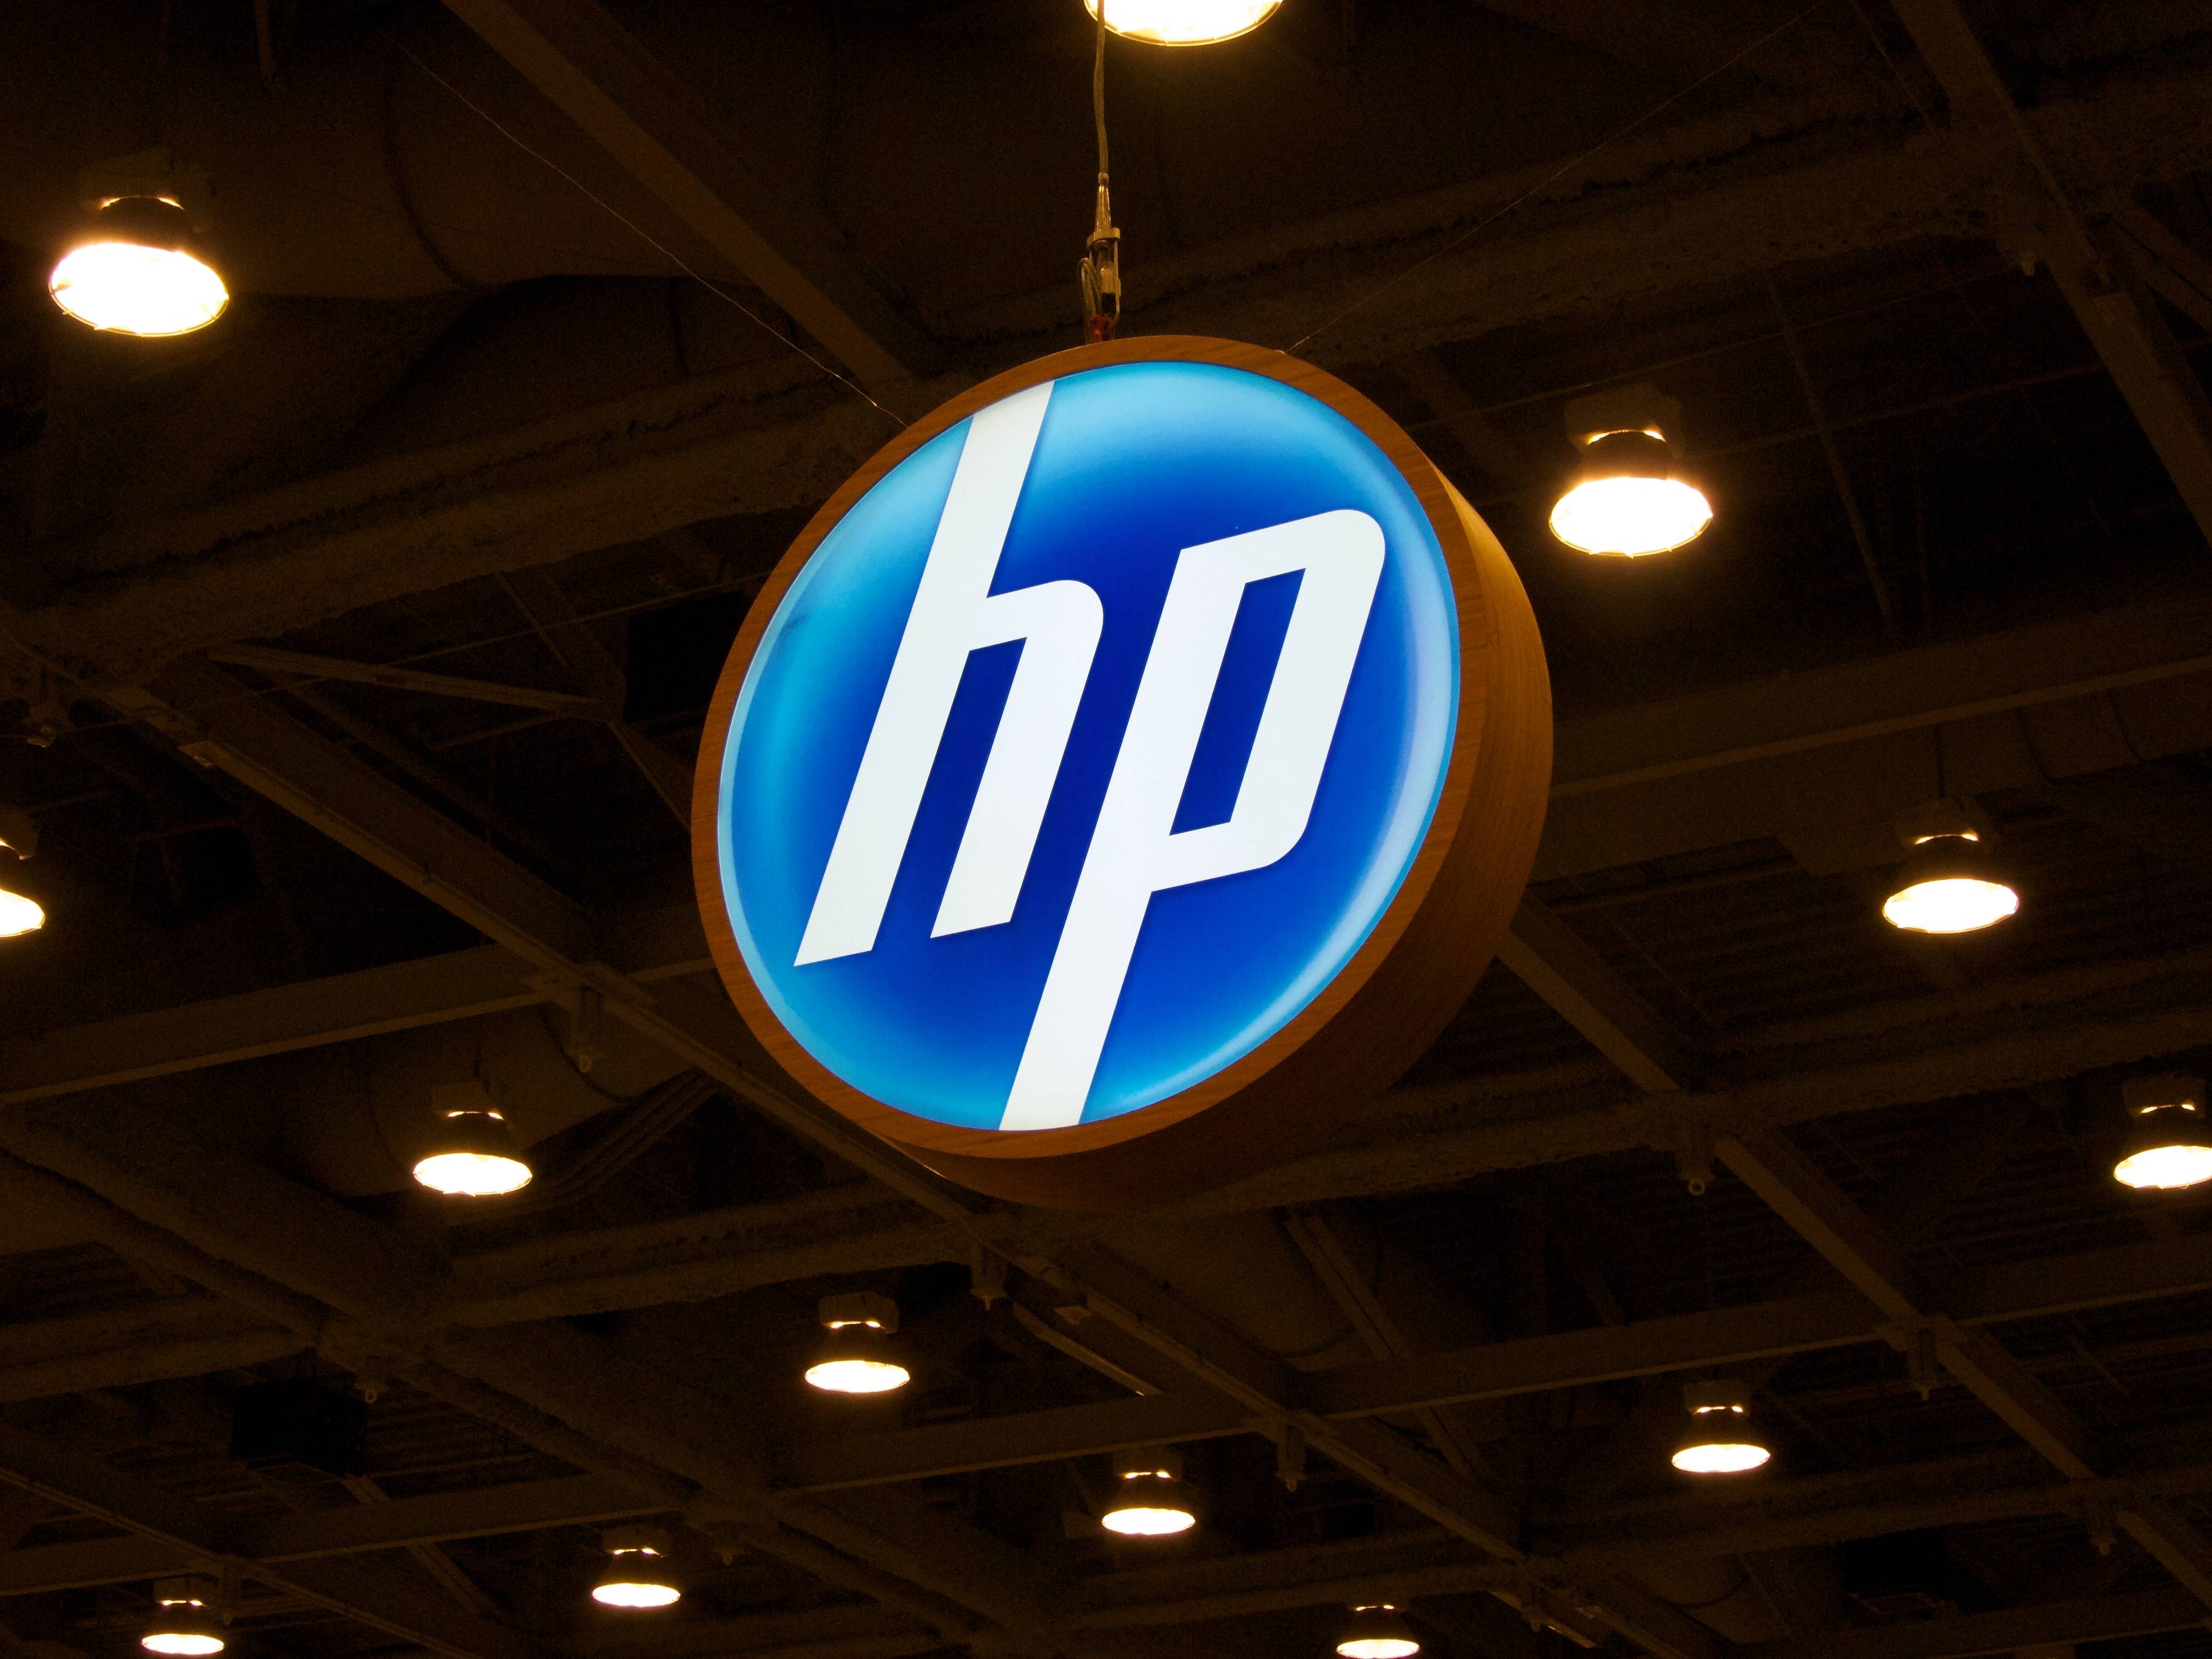 HP Best Logo HD Wallpapers